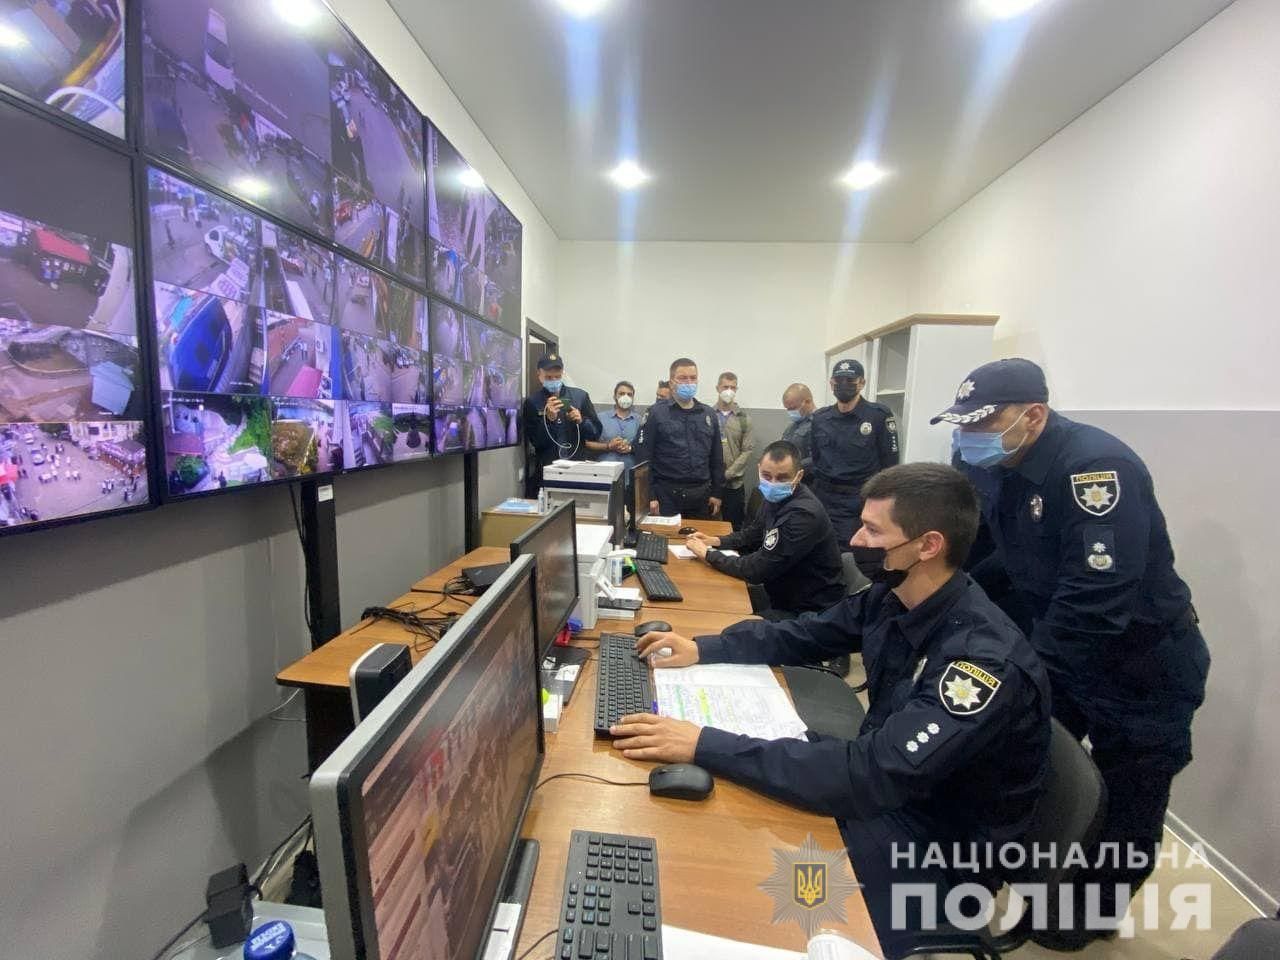 Поліція, ДСНС та Нацгвардія: в Умані створили штаб, що стежитиме за порядком на Рош га-Шана - Україна новини - 24 Канал